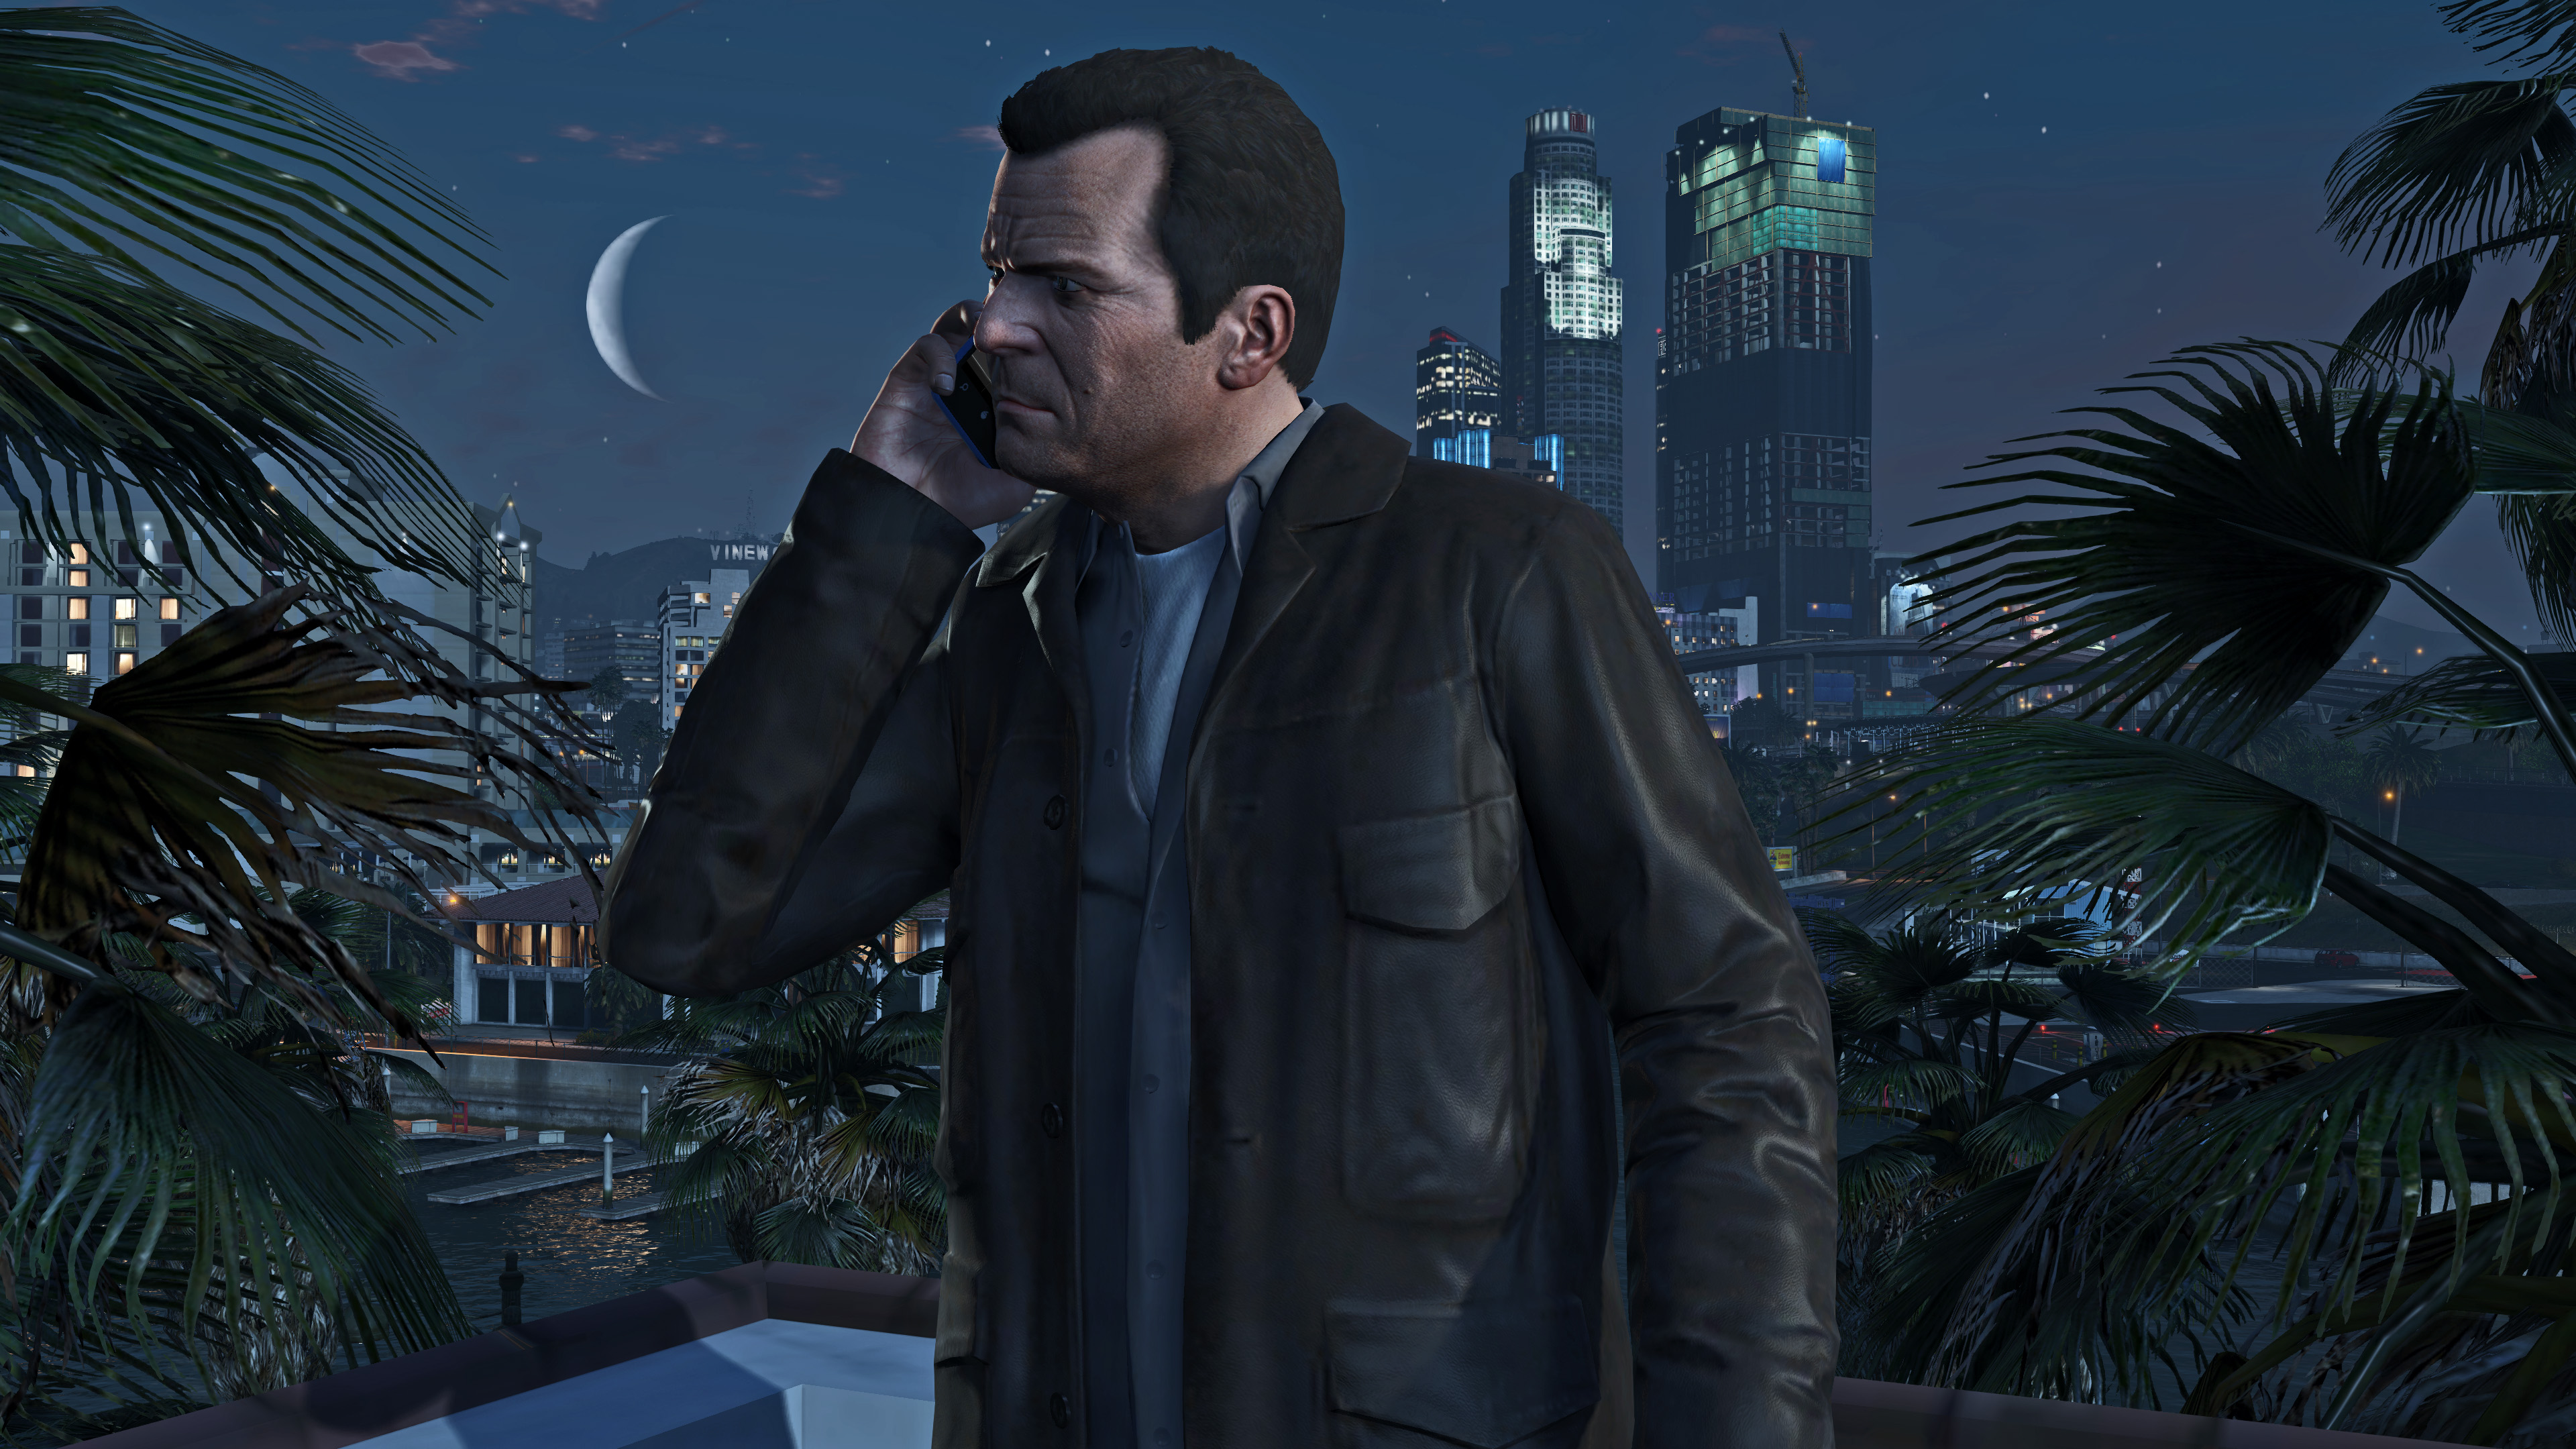 Grand Theft Auto V - FFA.hr Forum